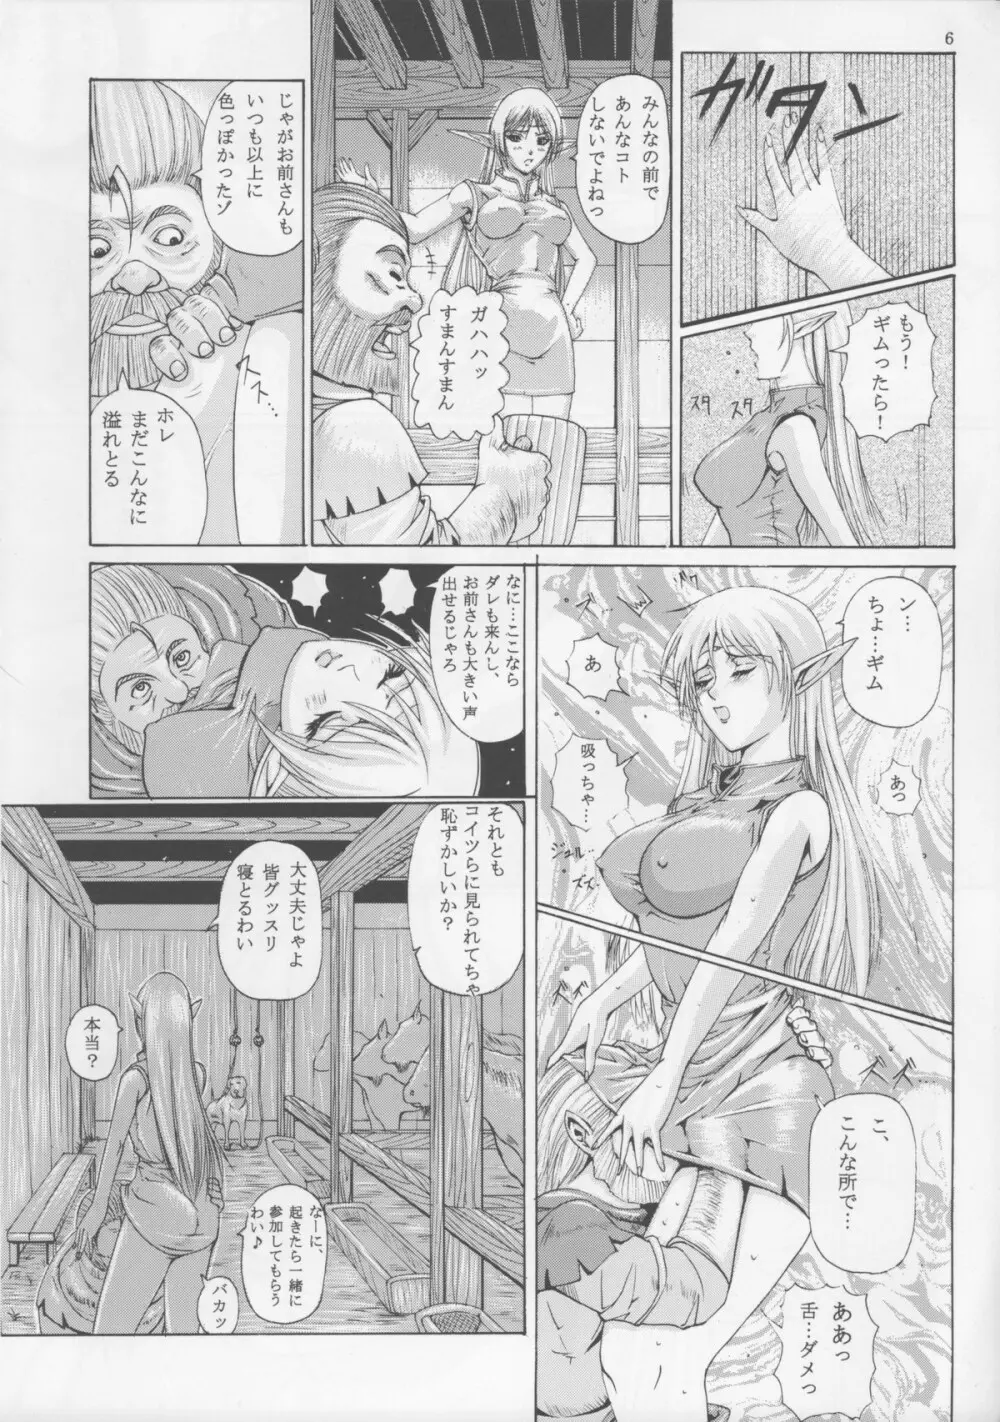 献獣3 ソネット - page6